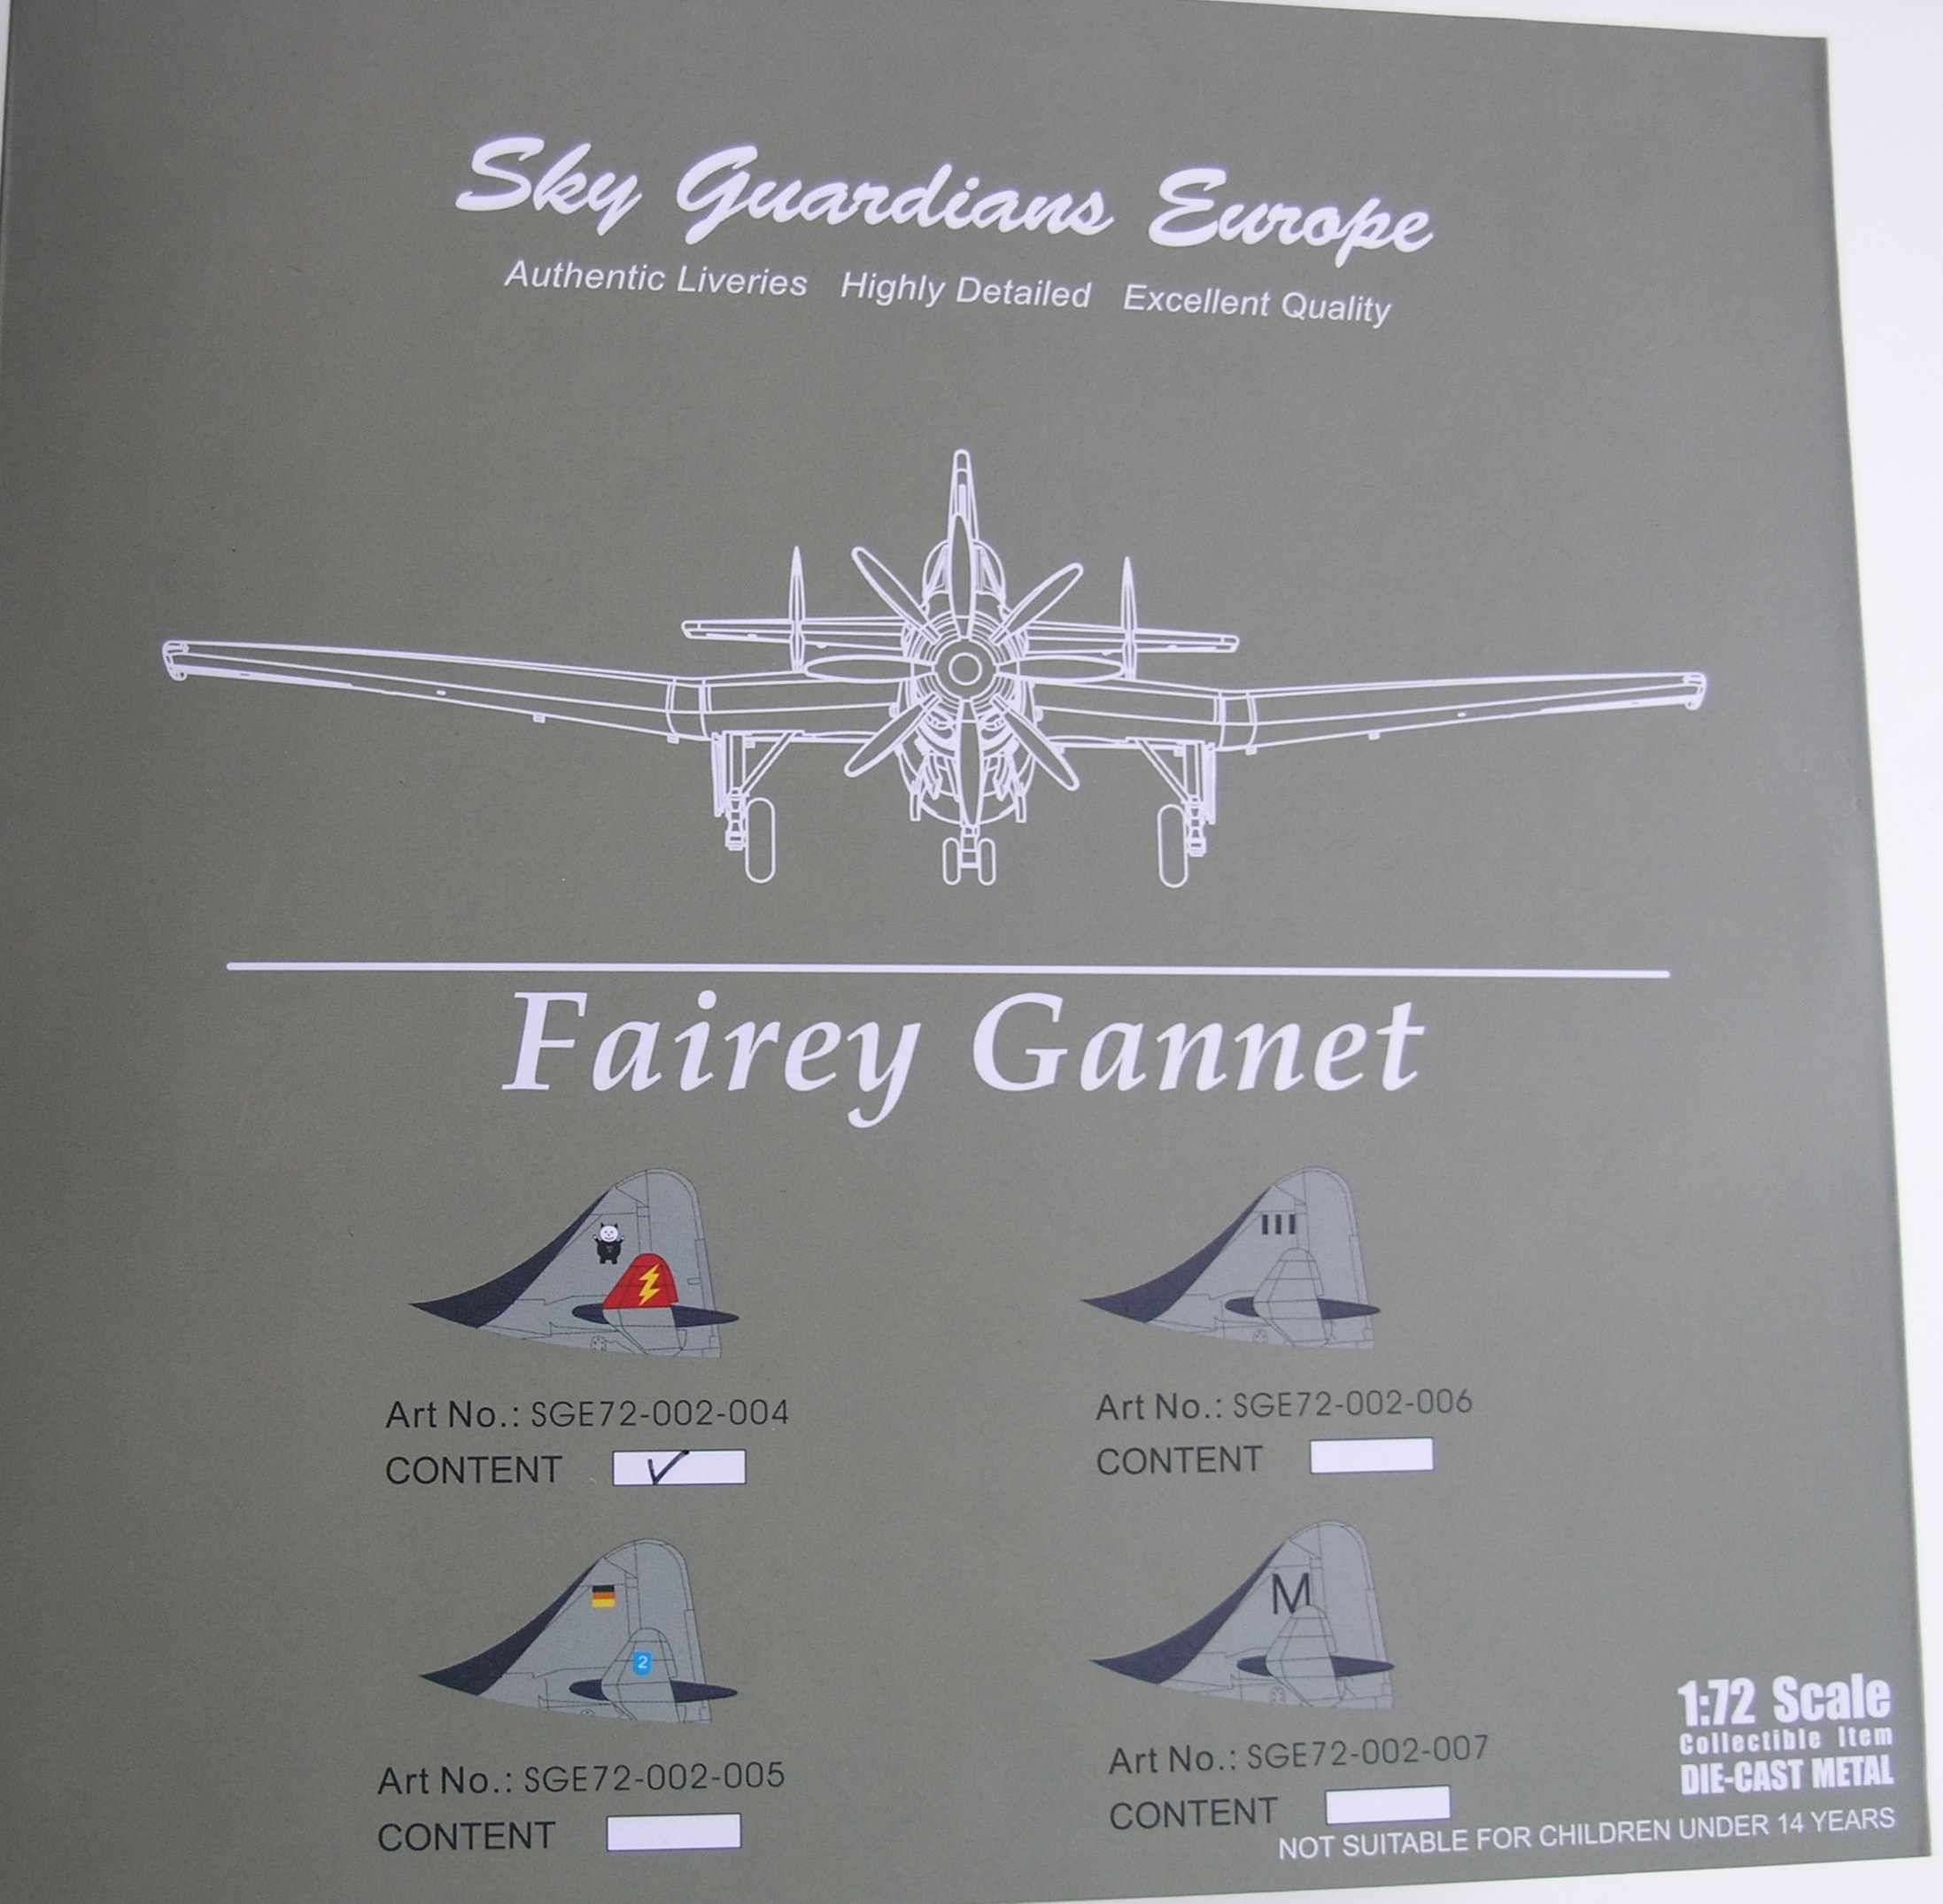 Gannet-SGE-72002-004-Box